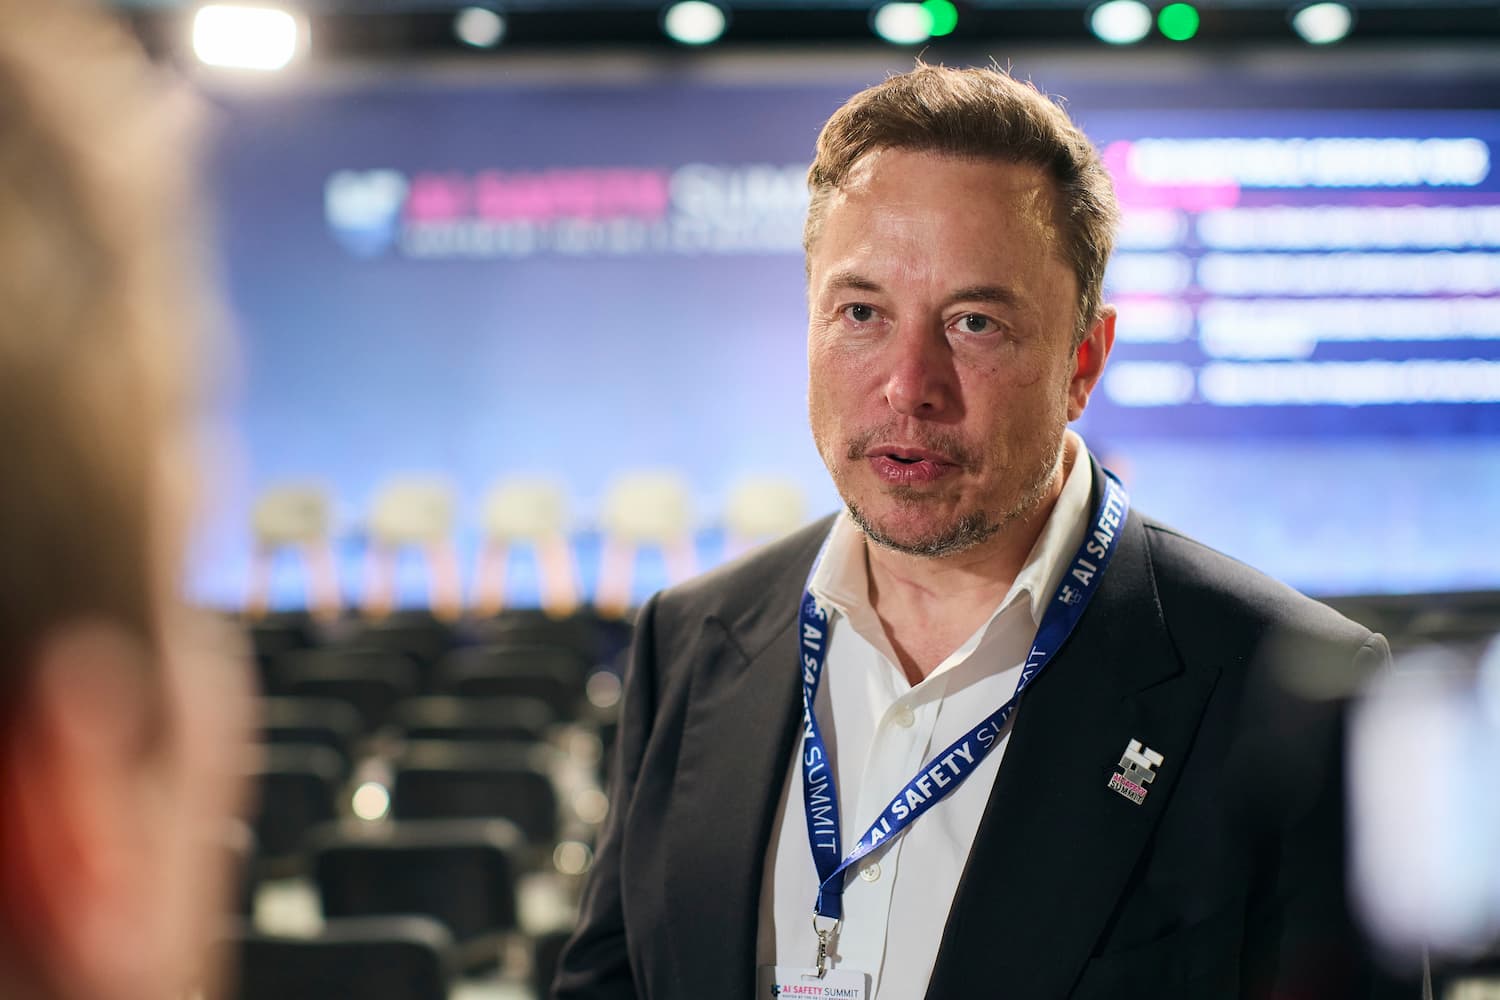 Elon Musk i en sal med en skjerm bak seg